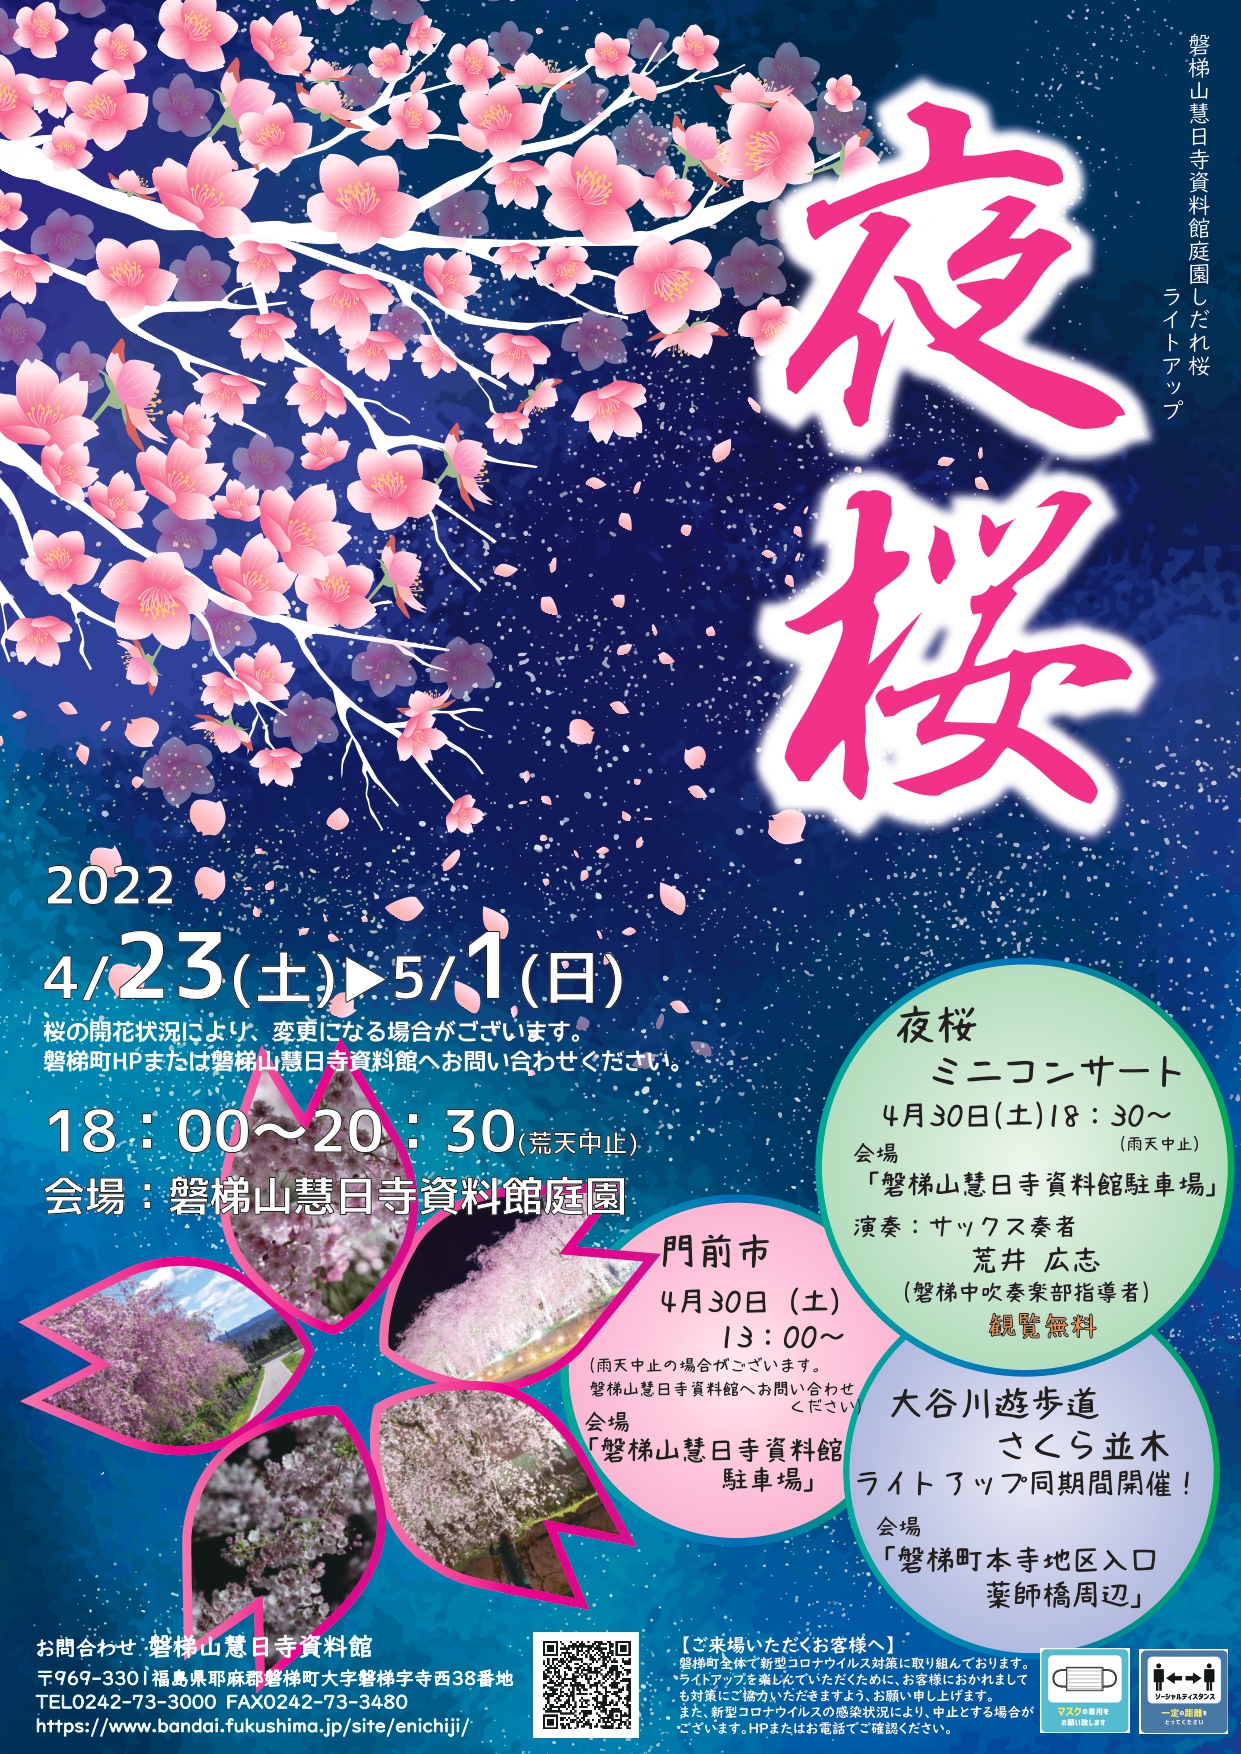 4/23-5/1 磐梯山慧日寺資料館庭園 夜桜ライトアップ